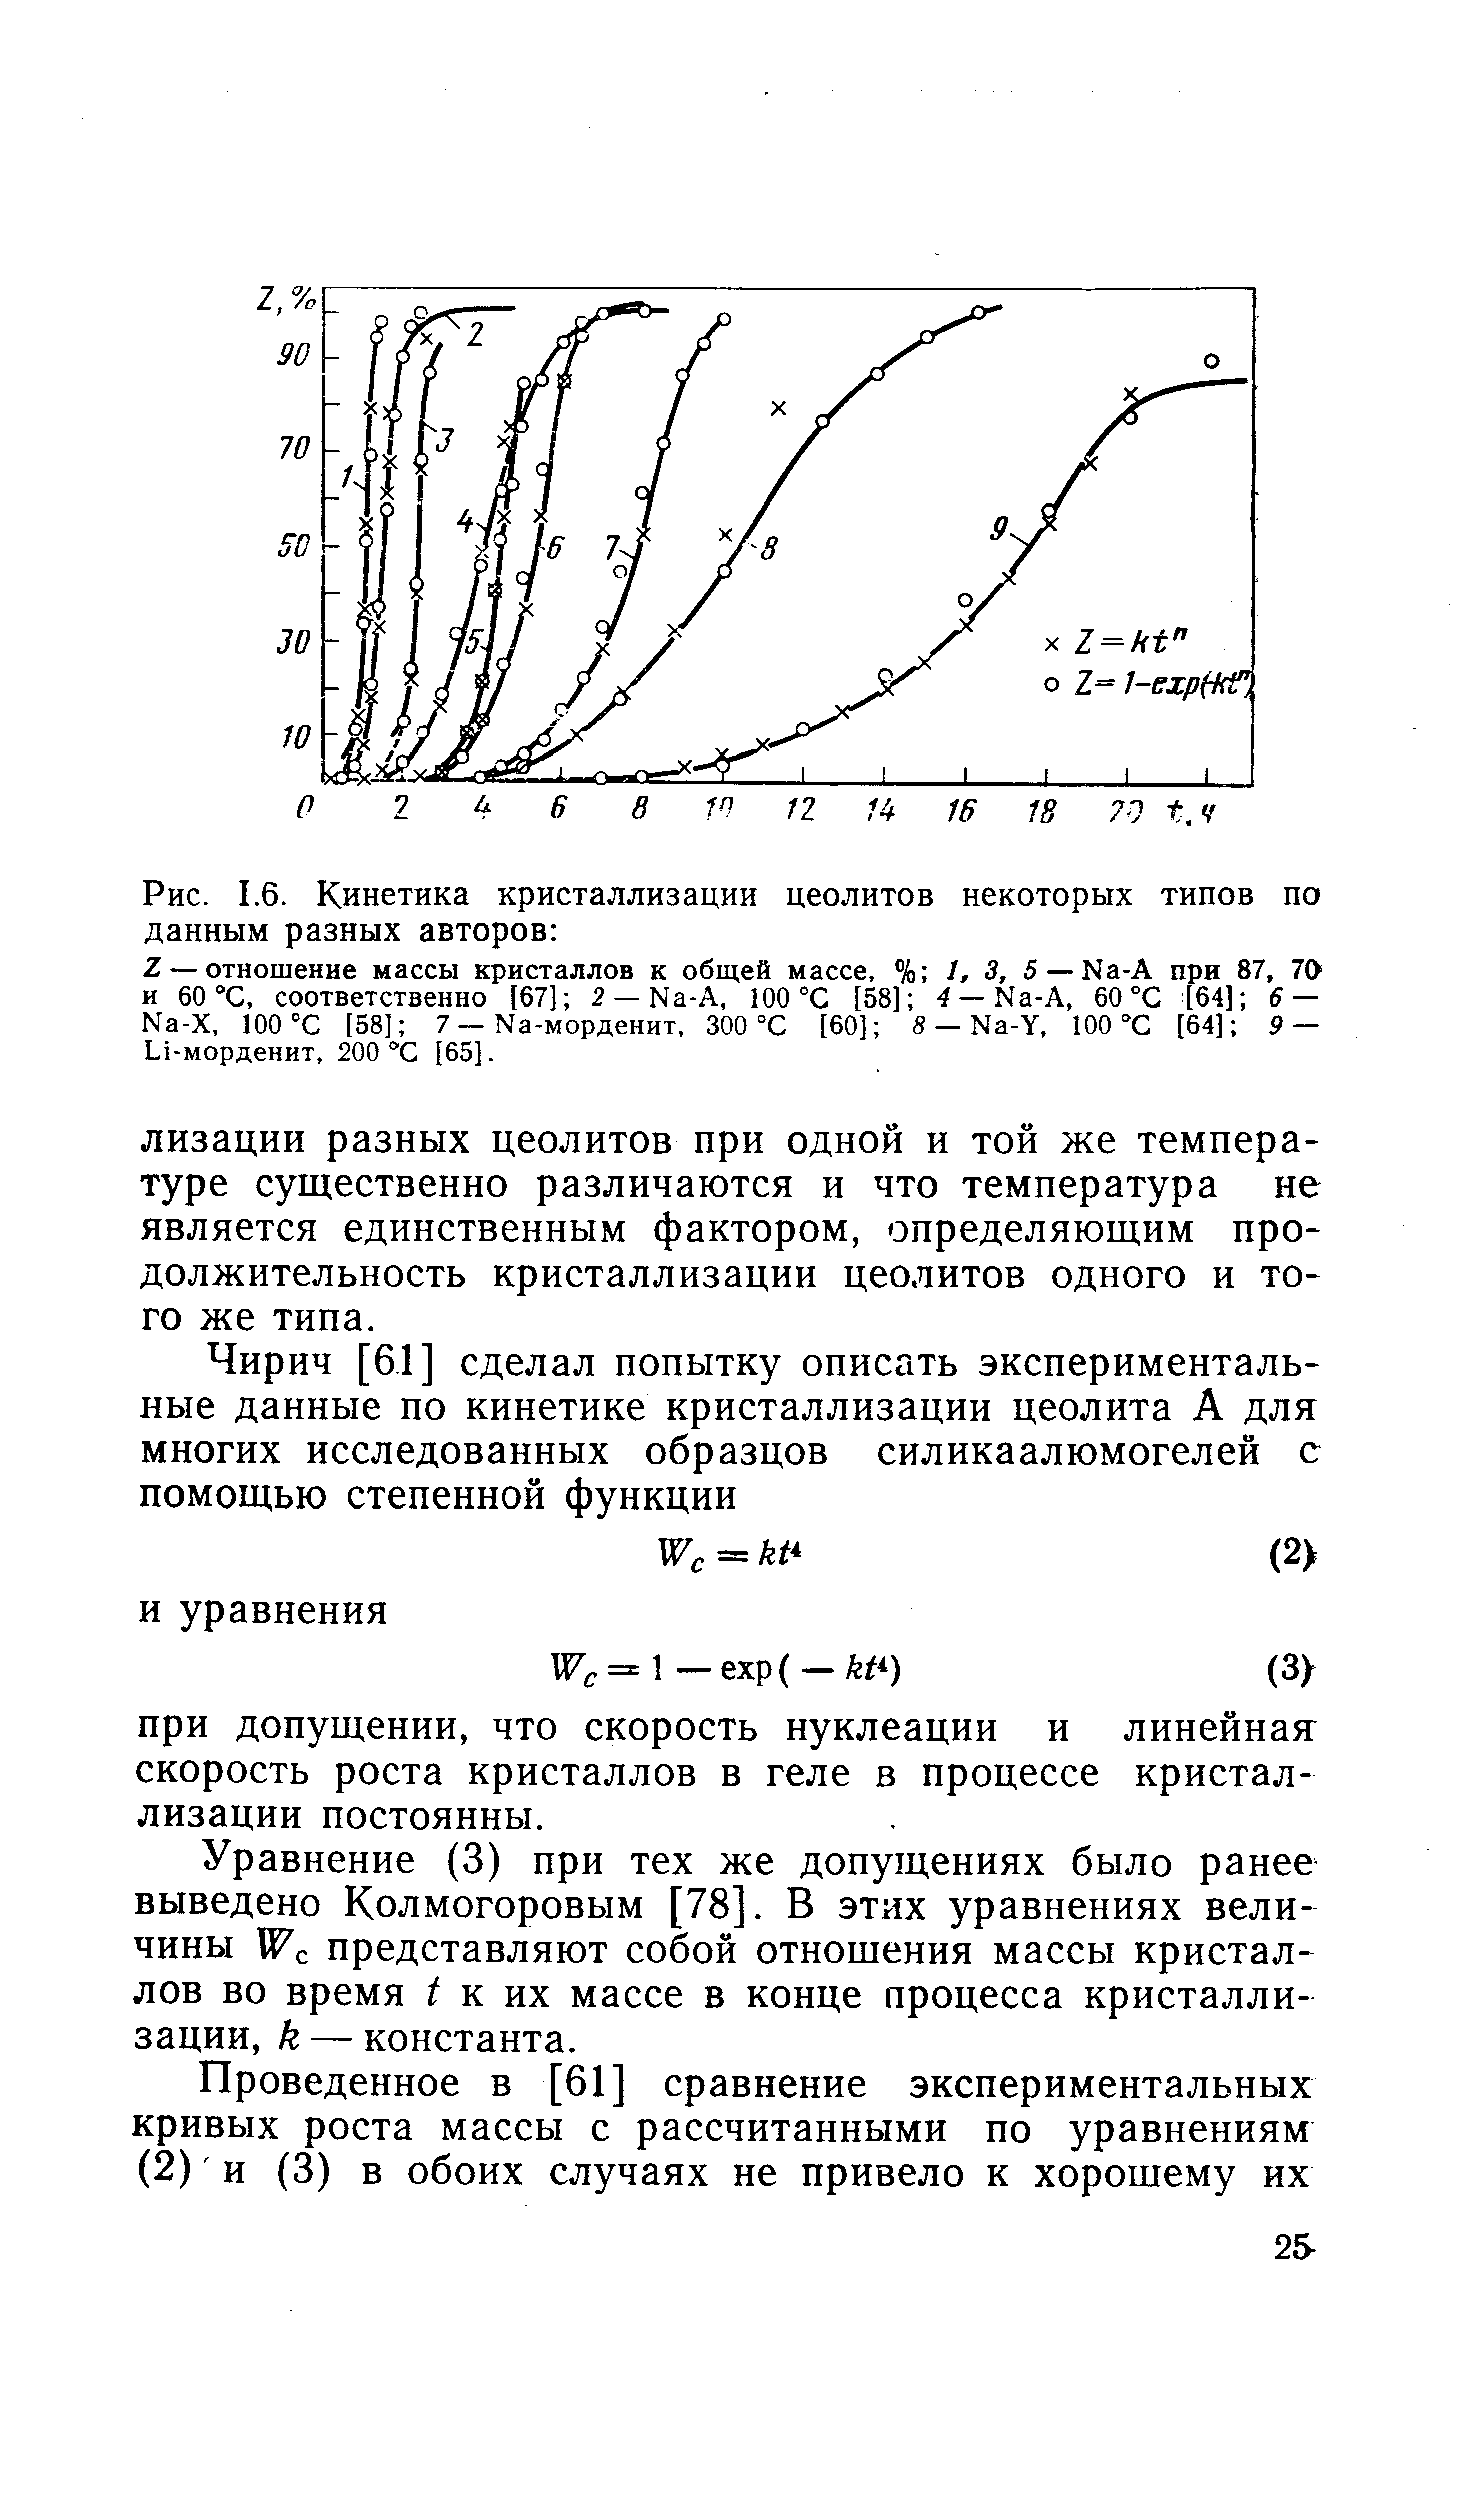 Уравнение (3) при тех же допущениях было ранее выведено Колмогоровым [78]. В этих уравнениях величины W представляют собой отношения массы кристаллов во время i к их массе в конце процесса кристаллизации, k — константа.